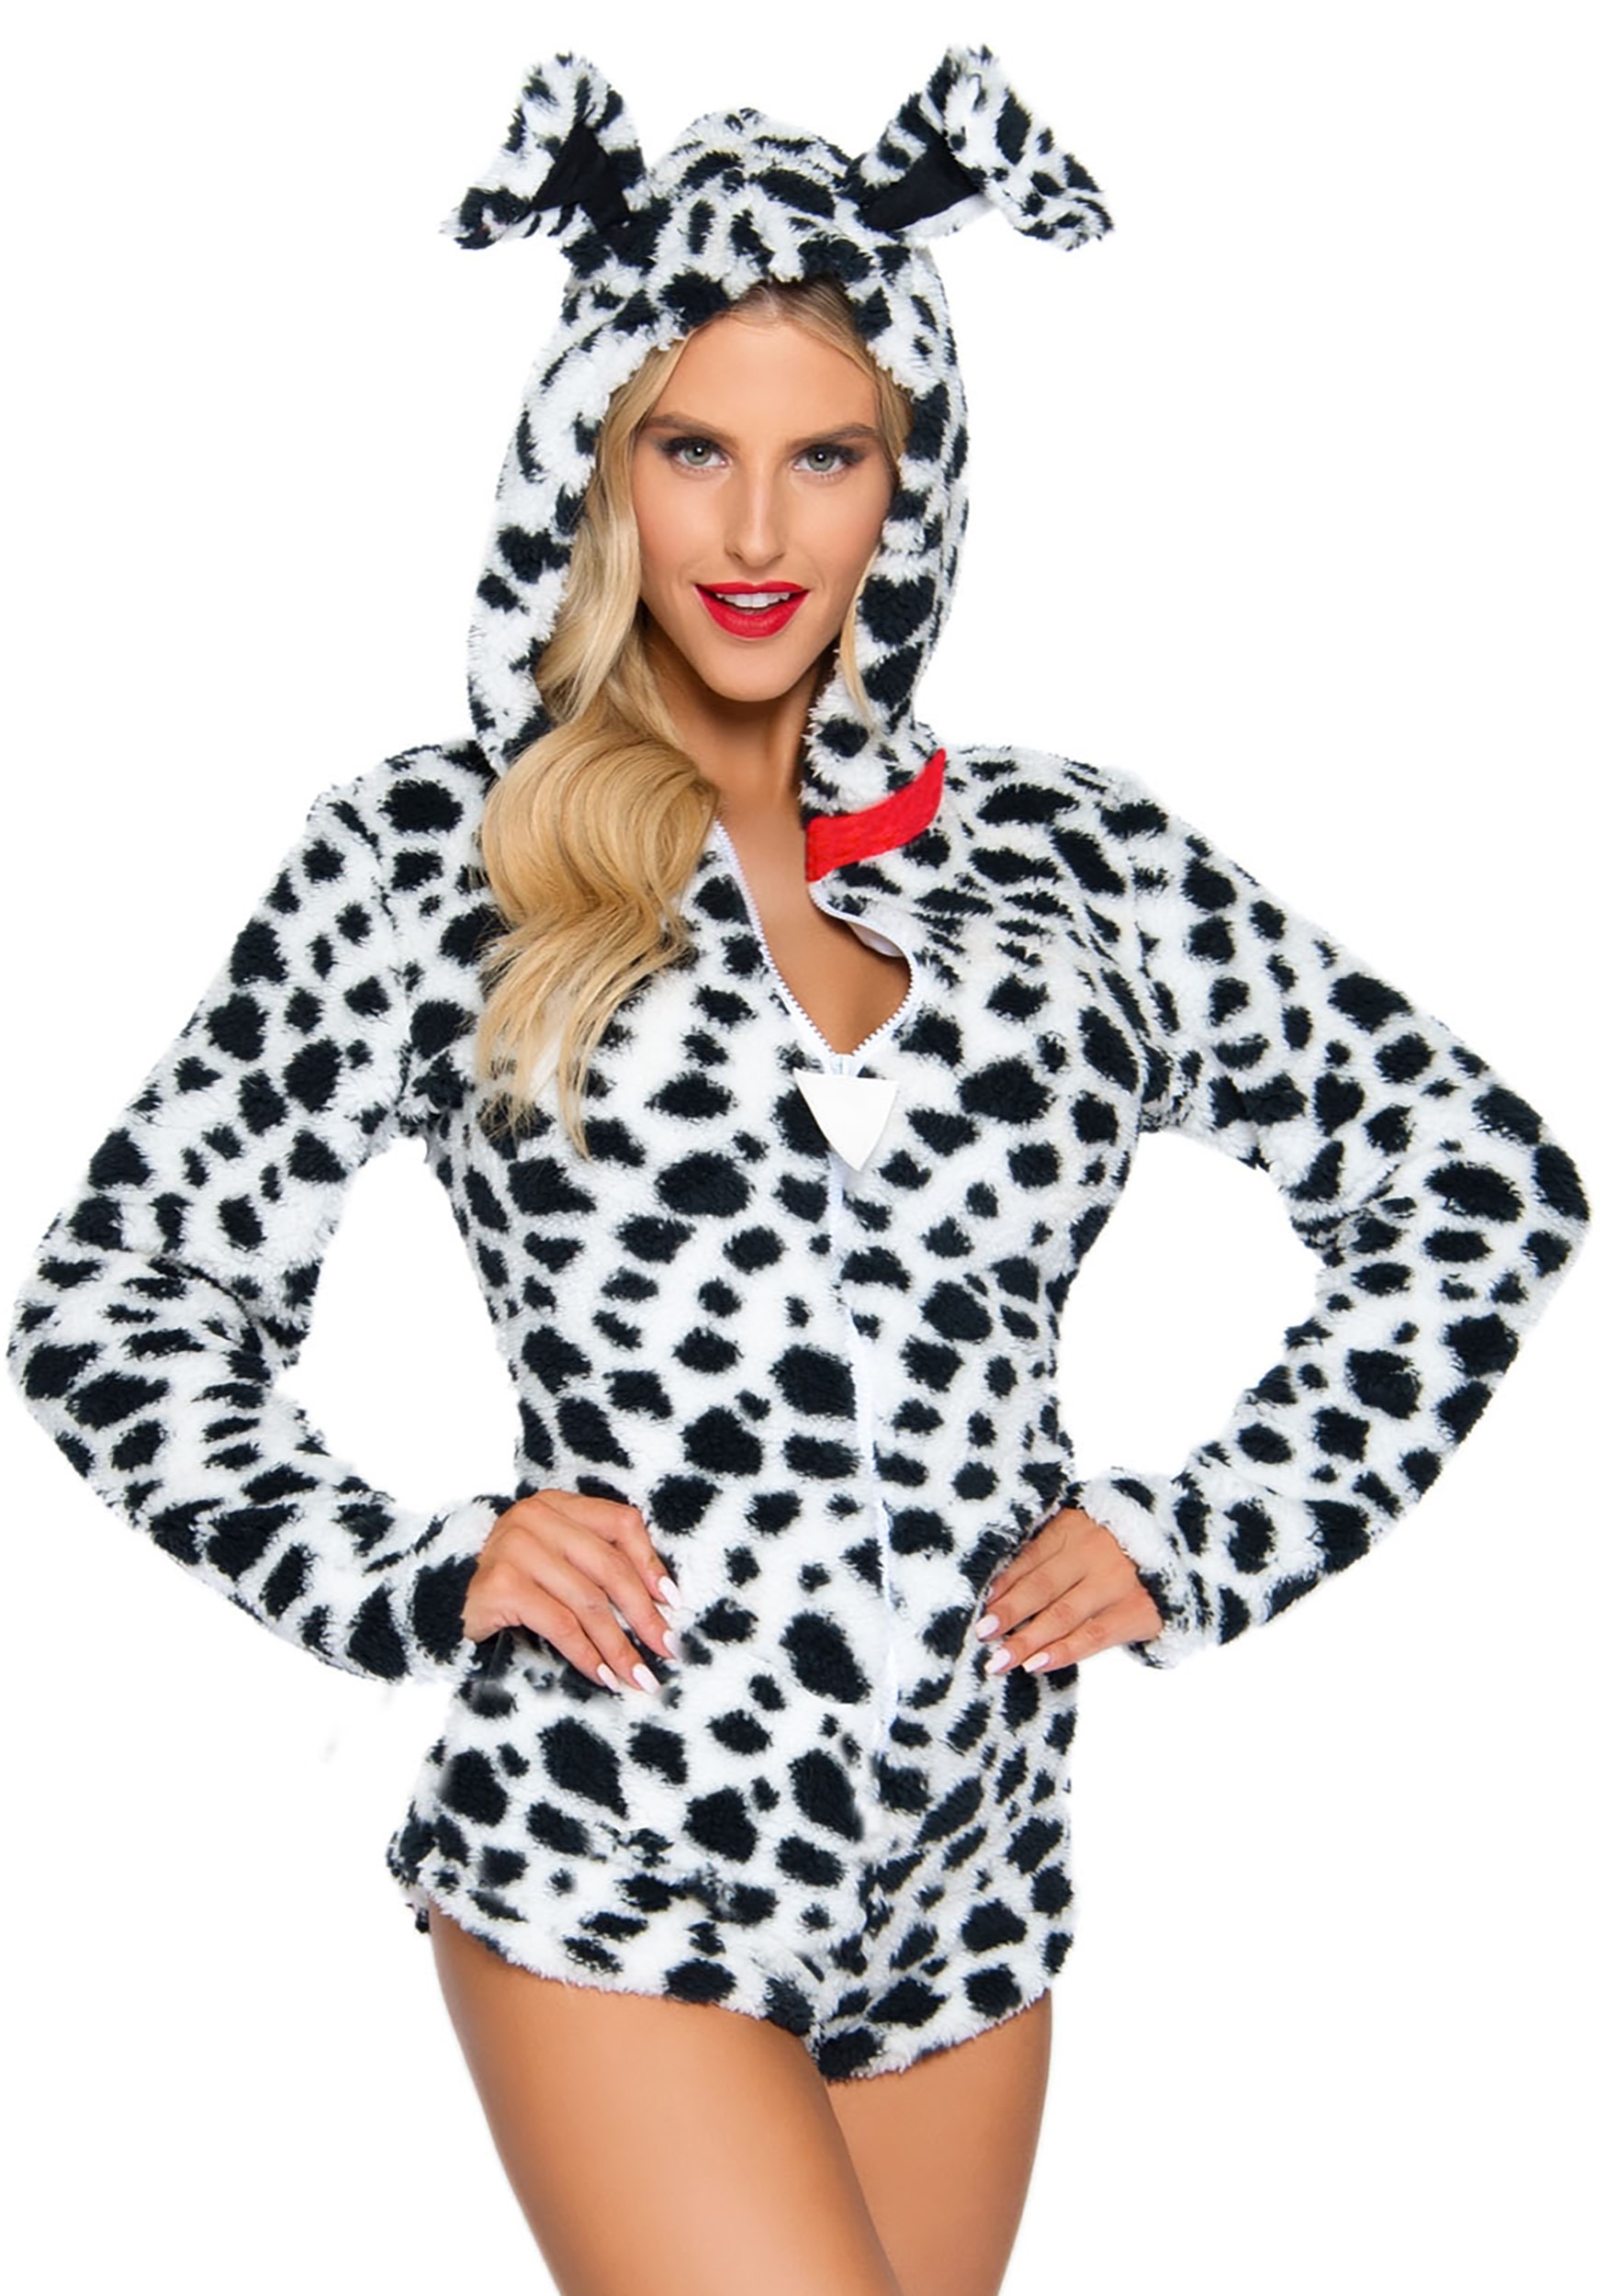 Darling Dalmatian Costume for Women